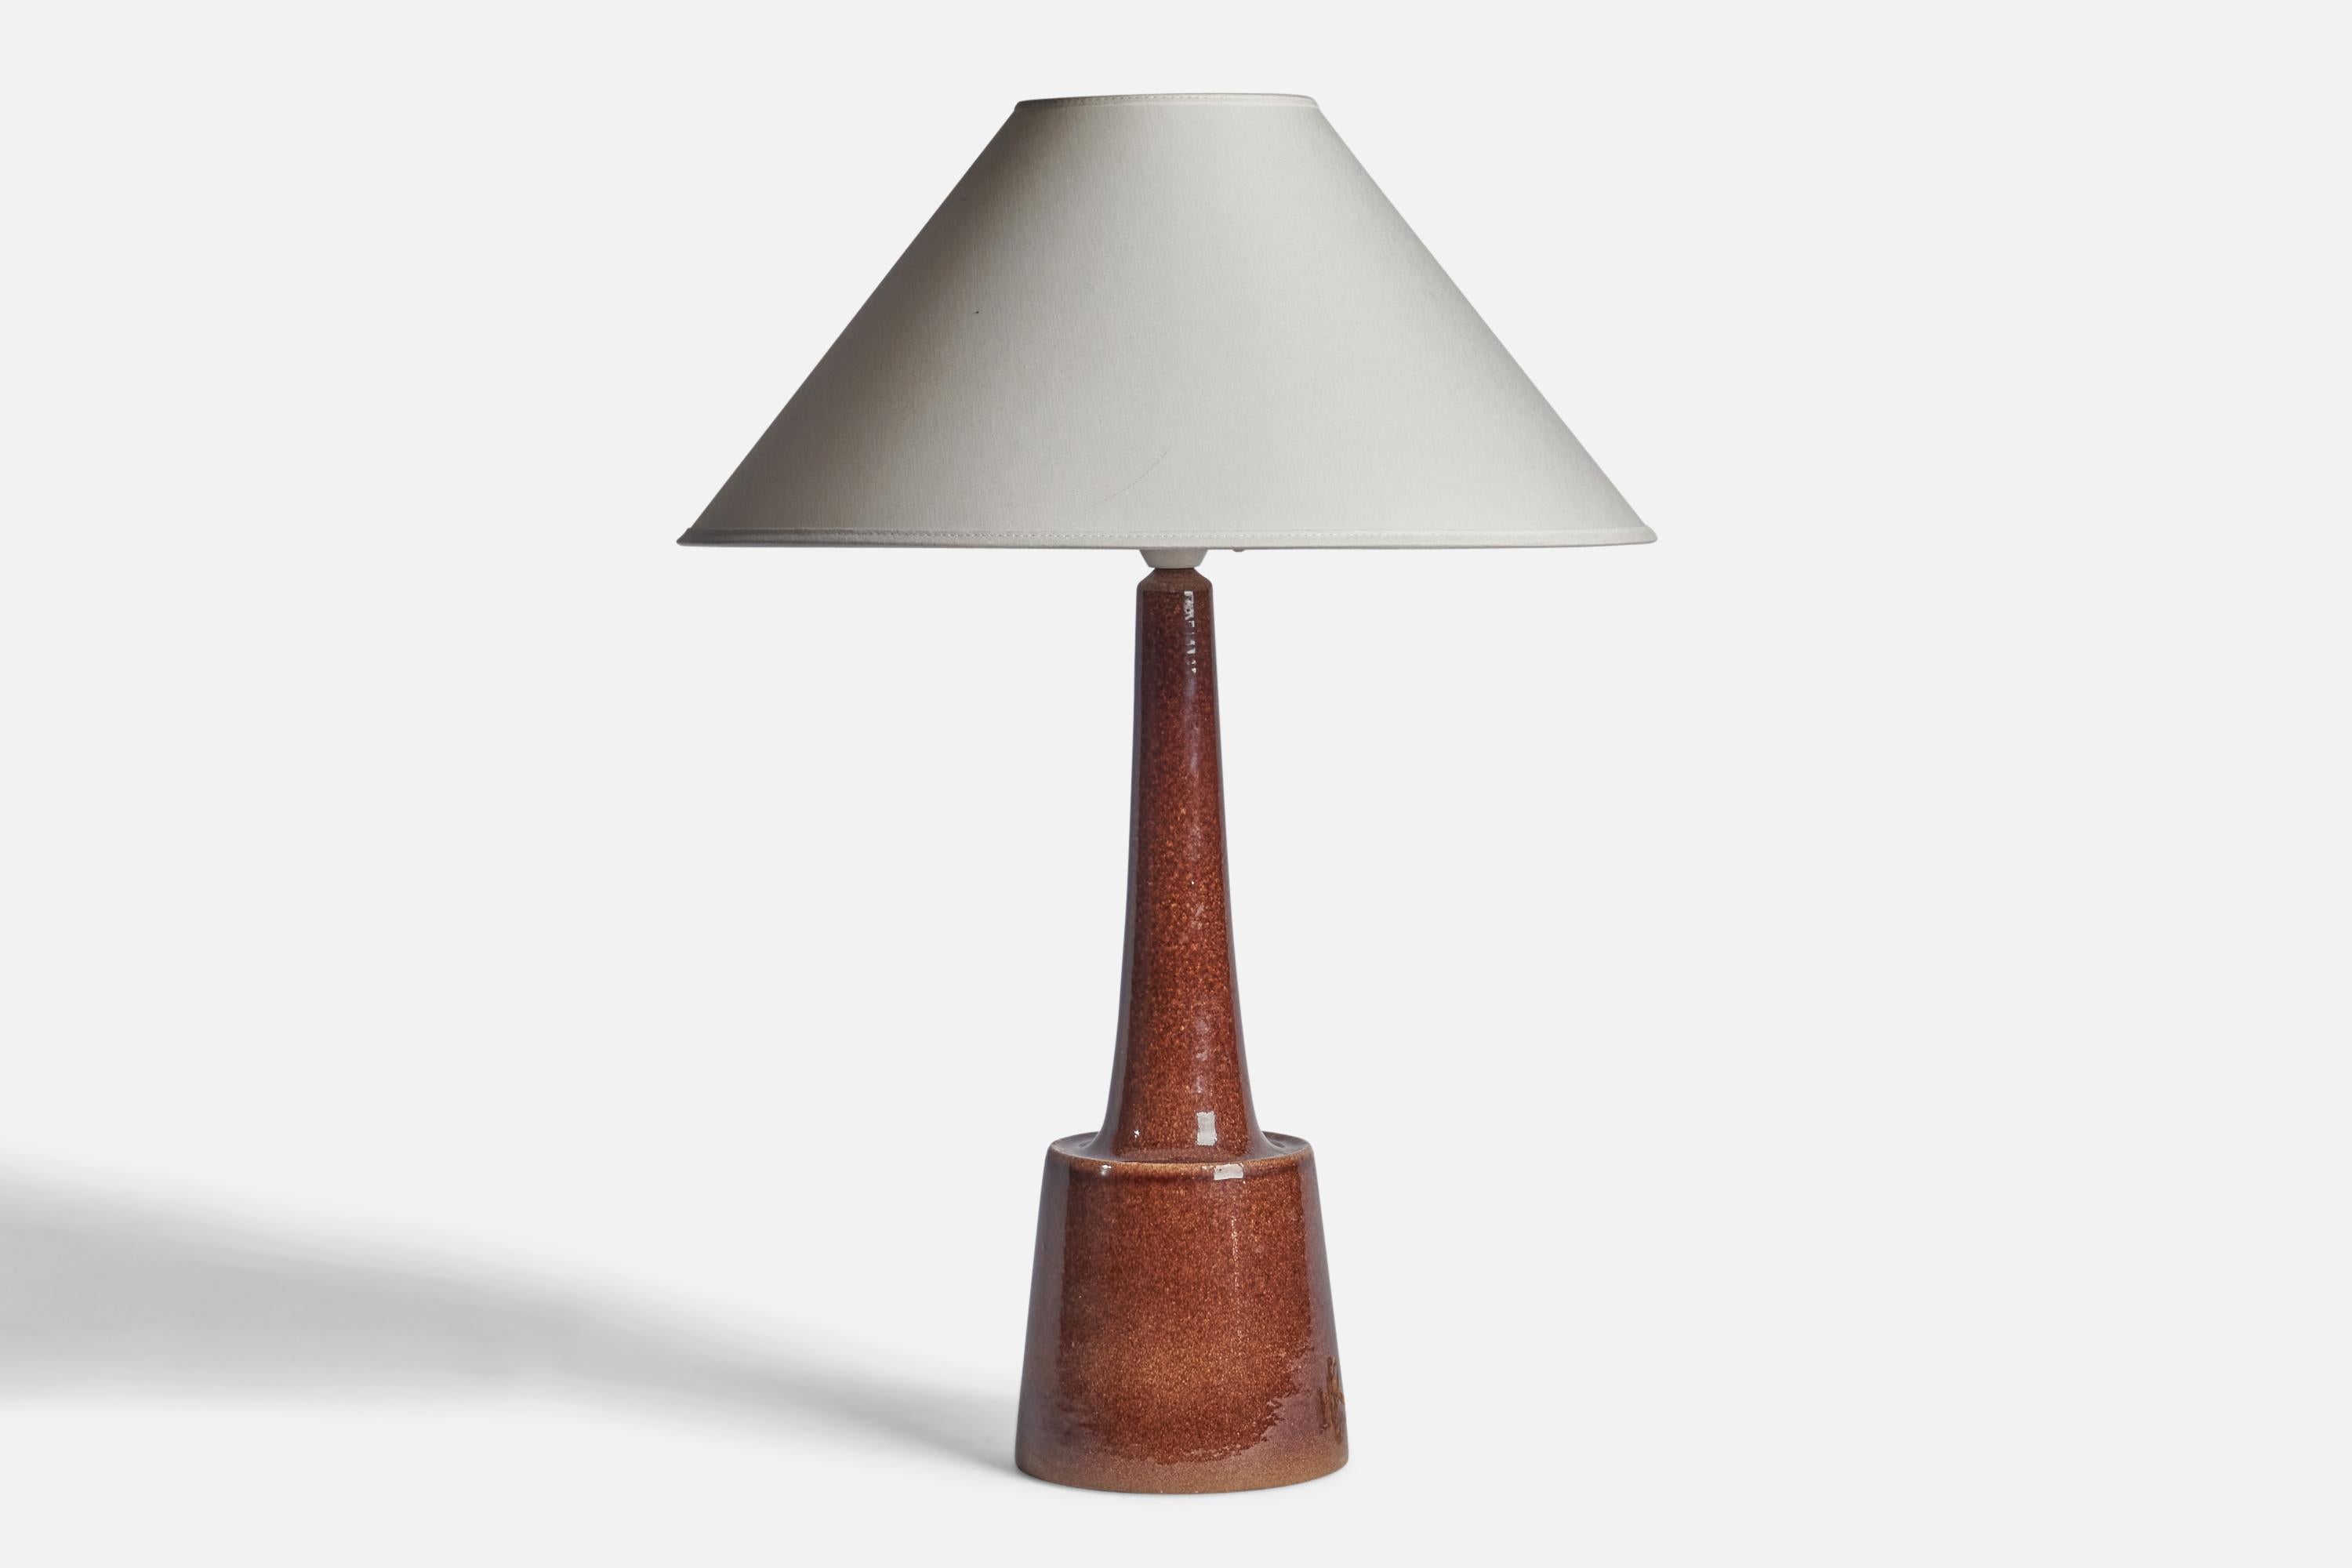 Tischlampe aus braun glasiertem Steingut, entworfen von Per & Annelise Linneman-Schmidt, hergestellt von Palshus, Dänemark, 1960er Jahre

Abmessungen der Lampe (Zoll): 17,65 H x 5,45